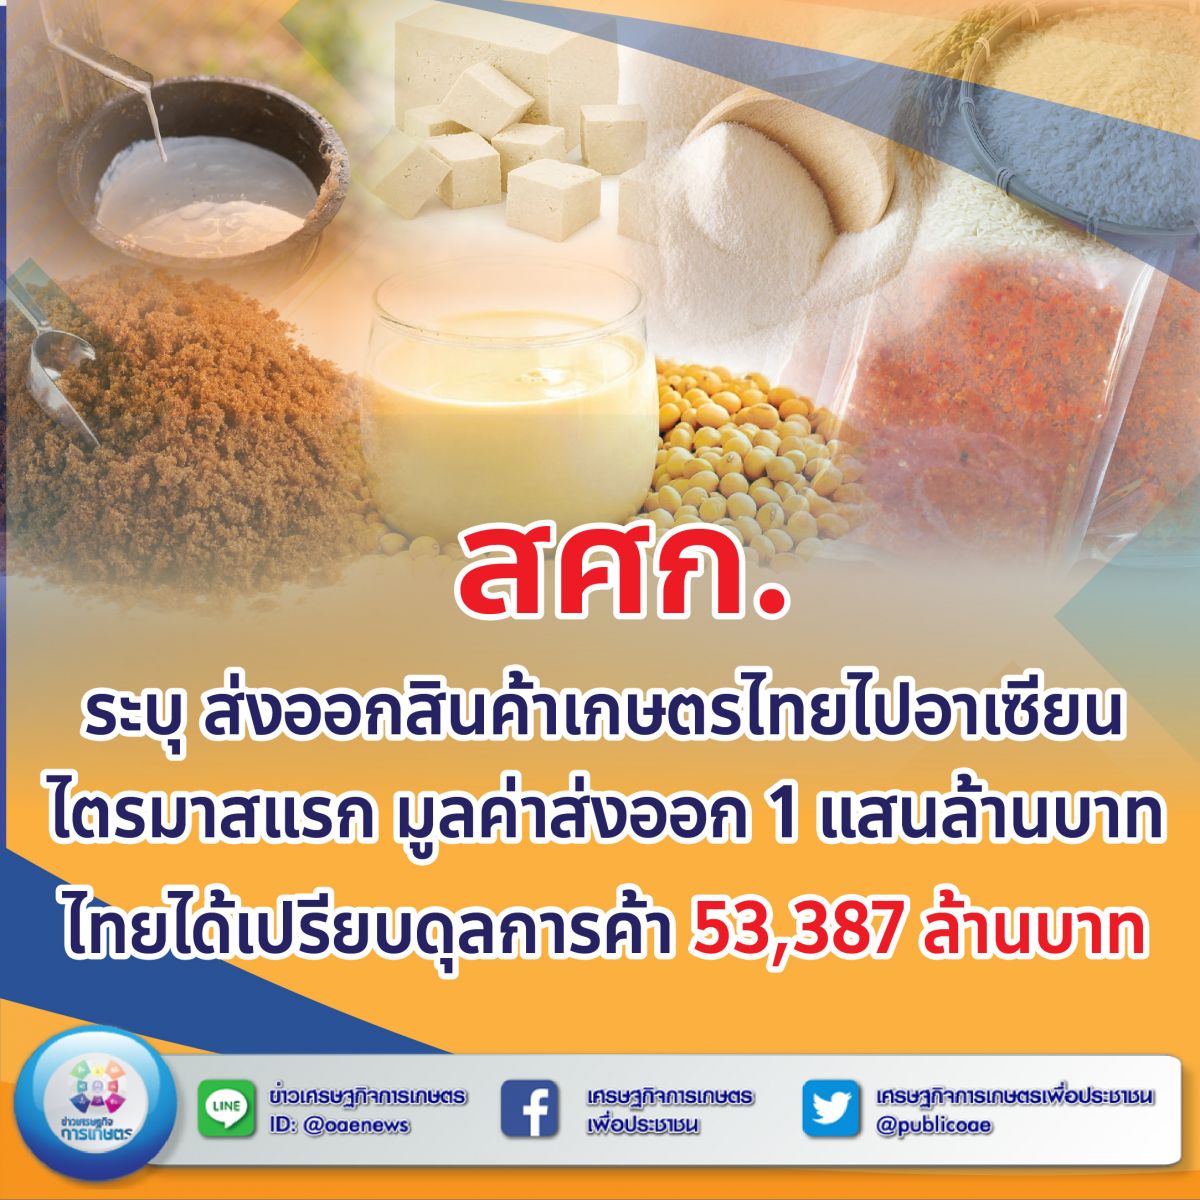 สศก. ระบุ ส่งออกสินค้าเกษตรไทยไปอาเซียน ไตรมาสแรก มูลค่าส่งออก 1 แสนล้านบาท  ไทยได้เปรียบดุลการค้า 53,387 ล้านบาท